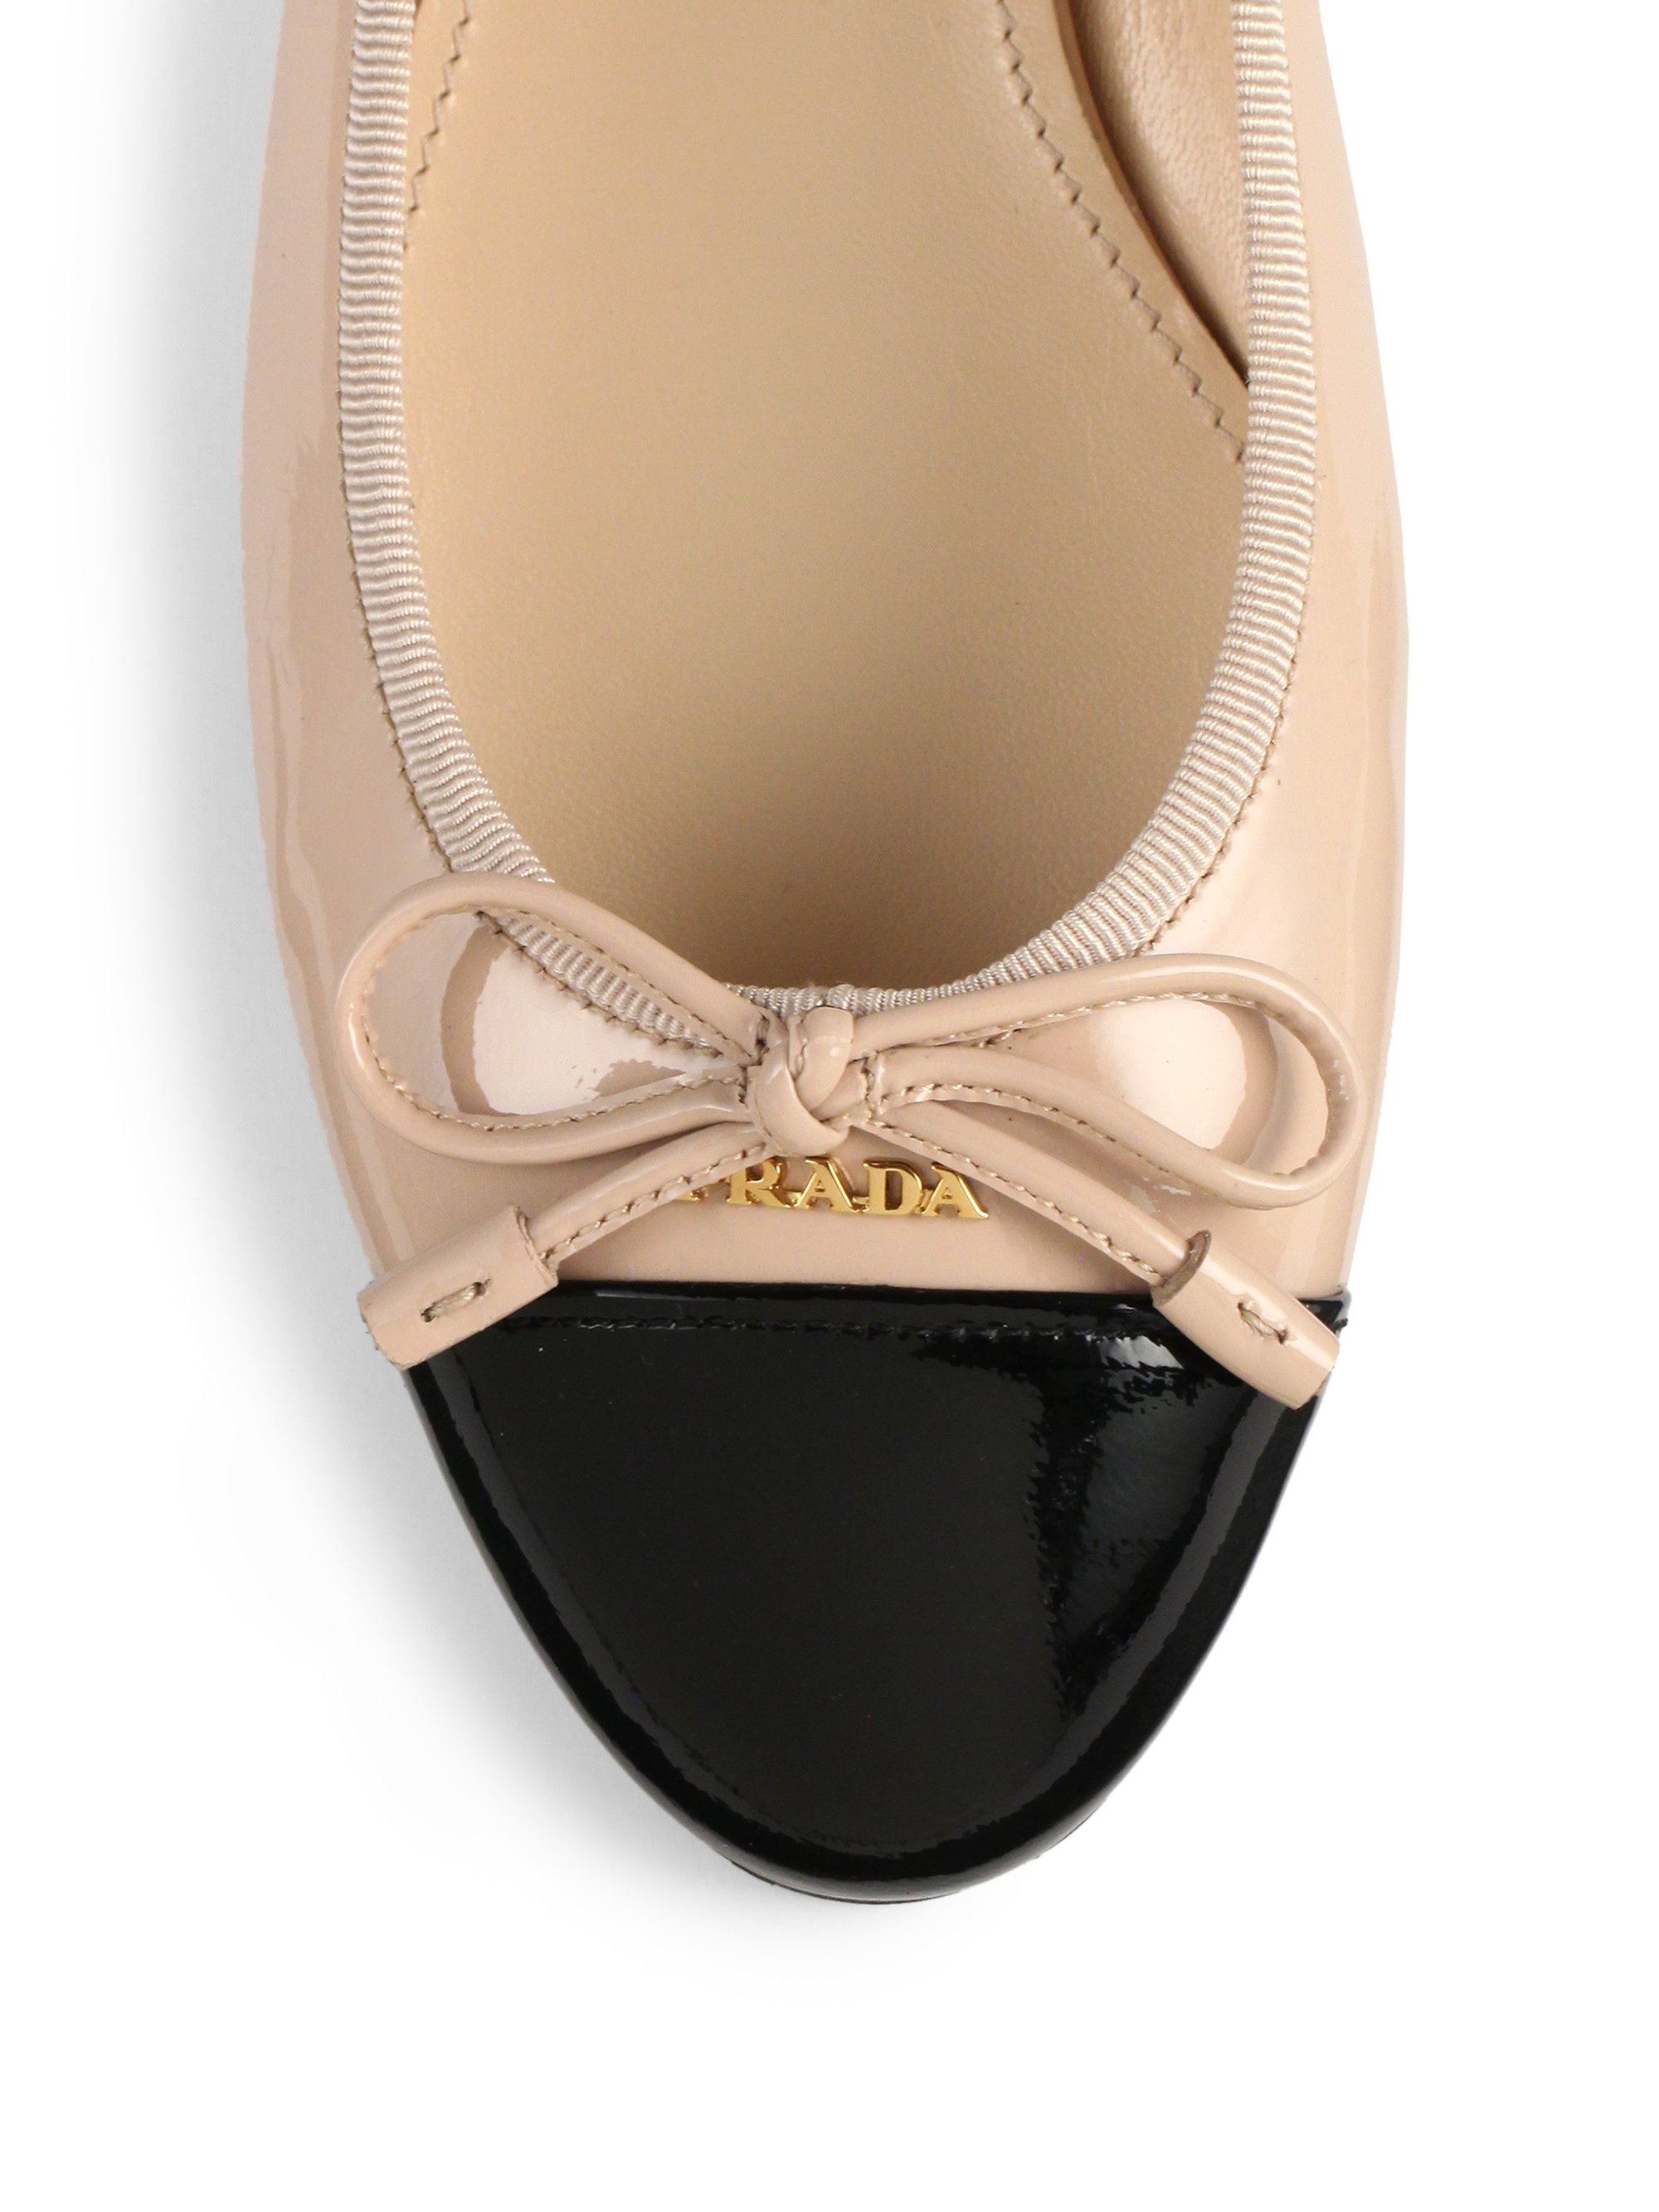 prada ballerina shoes